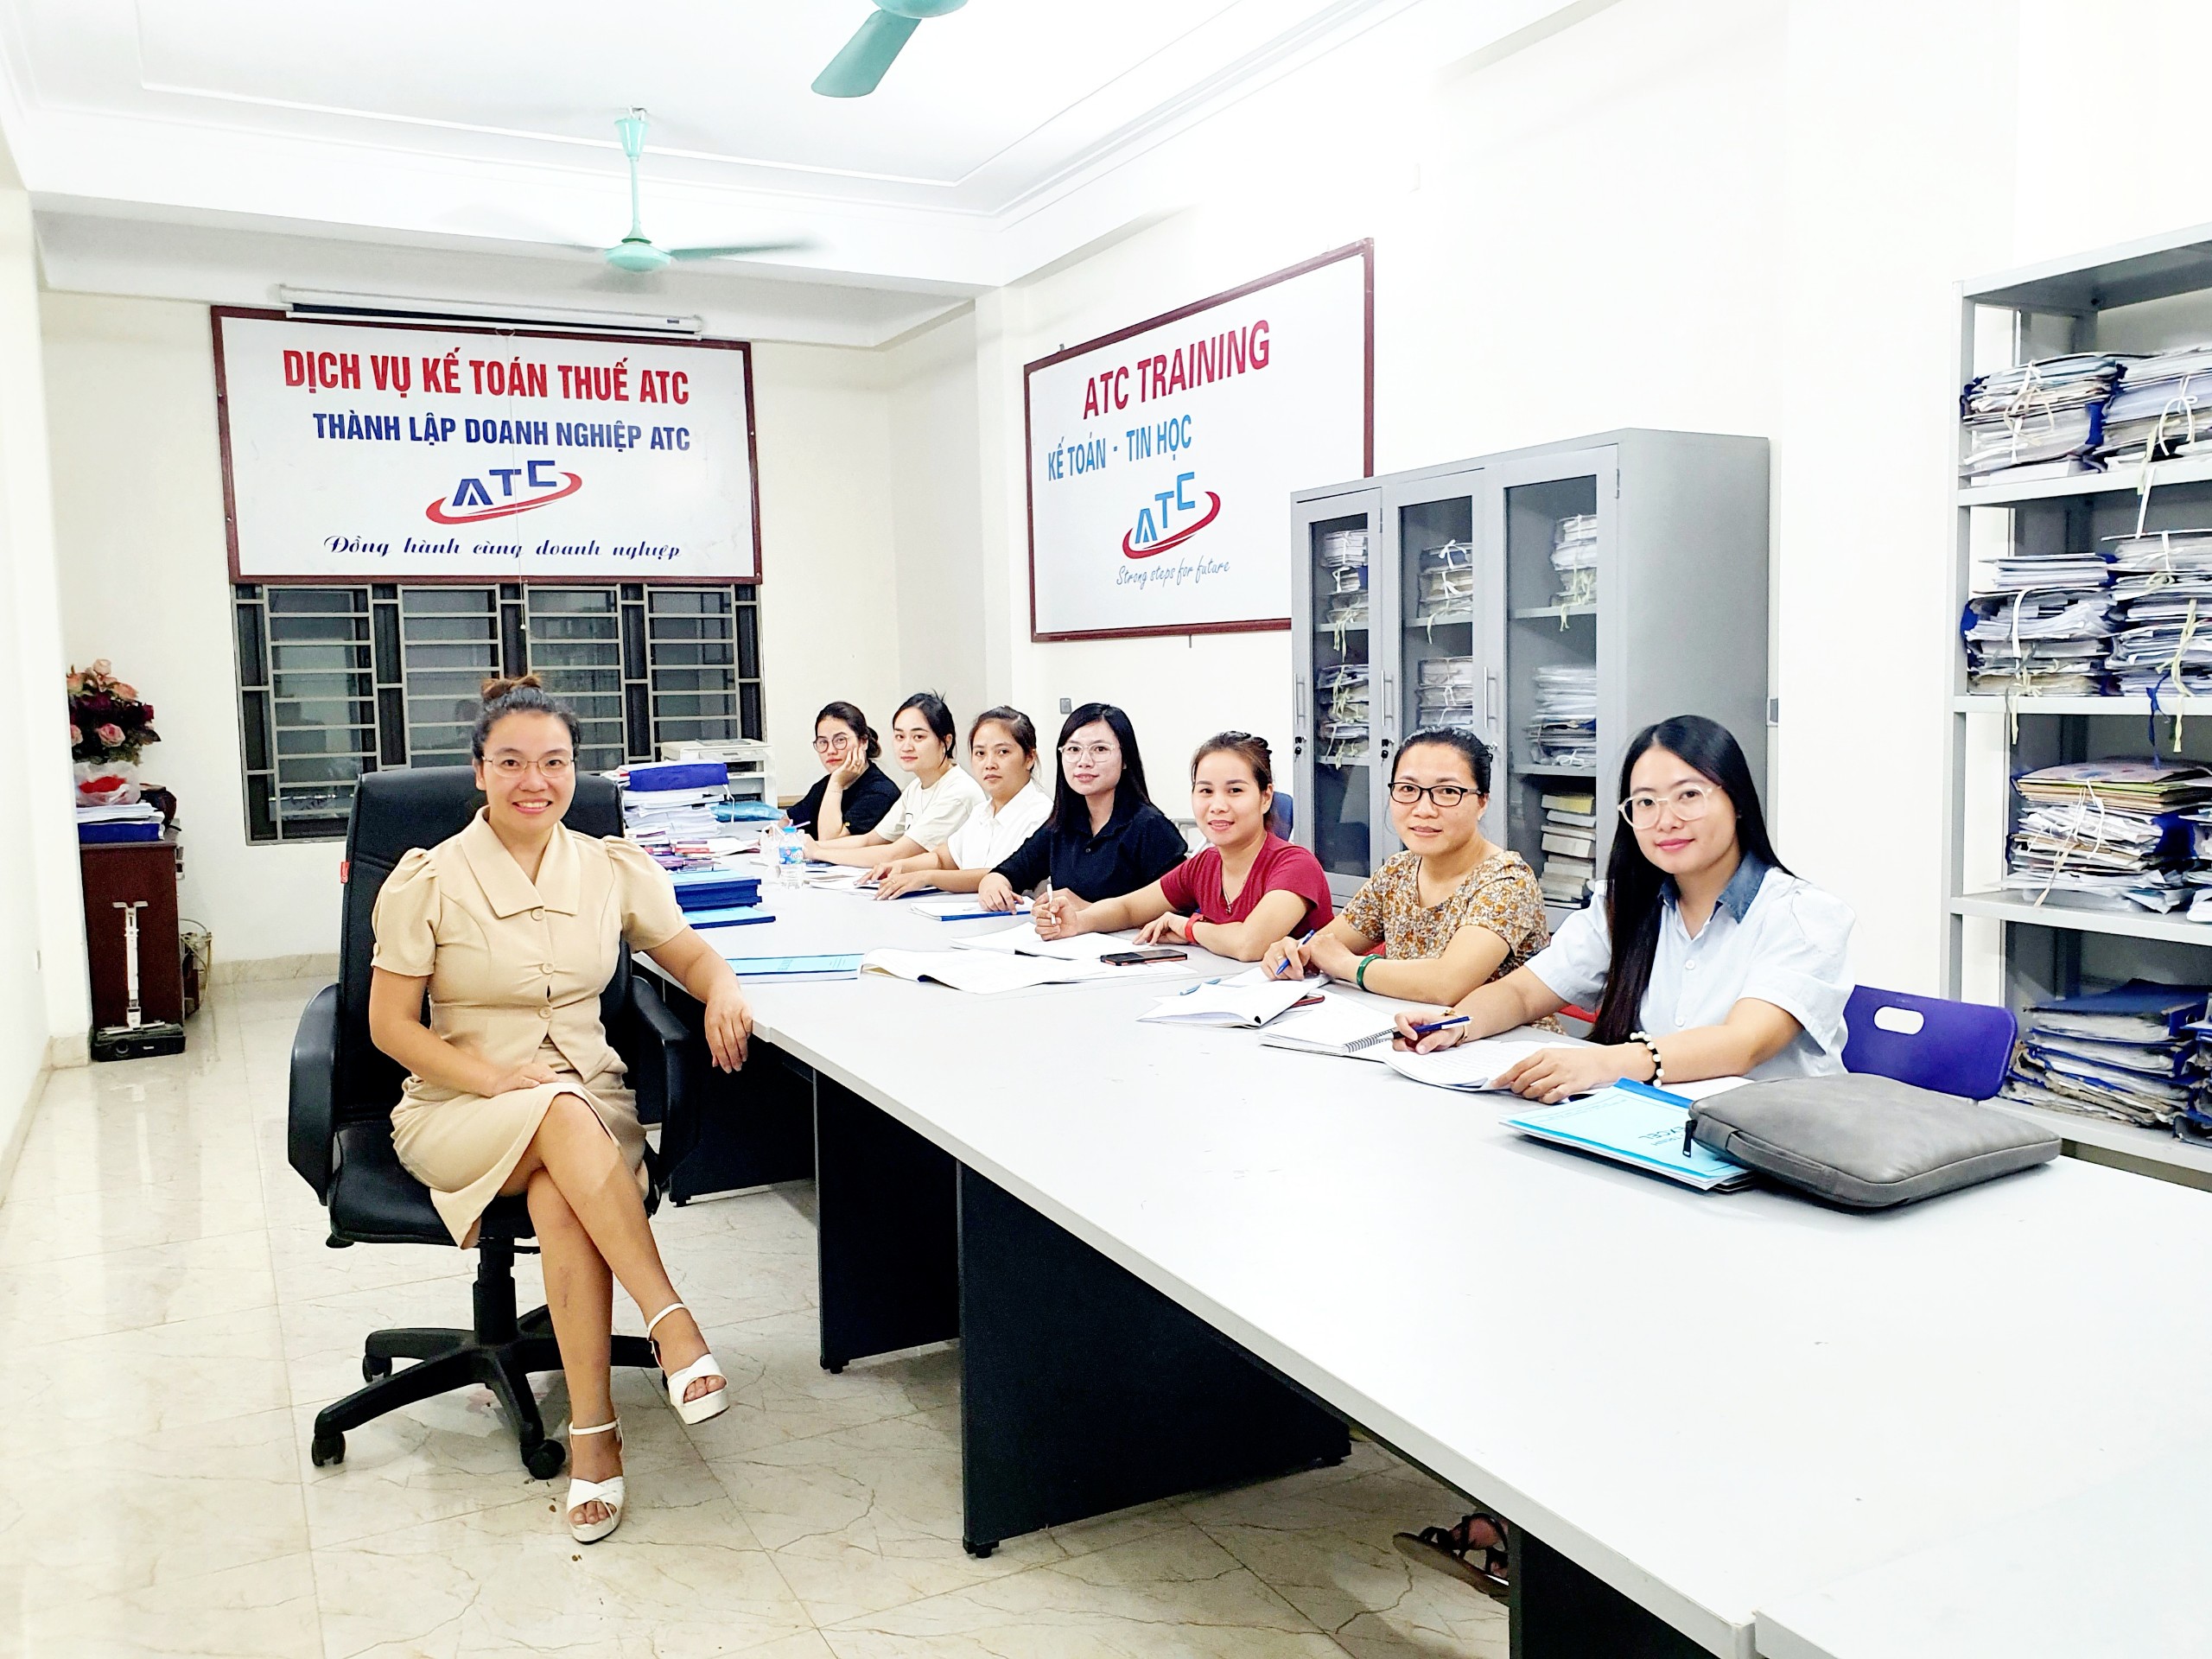 Lớp học kế toán tổng hợp ở Thanh Hóa HẠCH TOÁN CHI PHÍ NHÂN CÔNG THUÊ NGOÀICác phương án thuê nhân công ngoài của Doanh nghiệp: